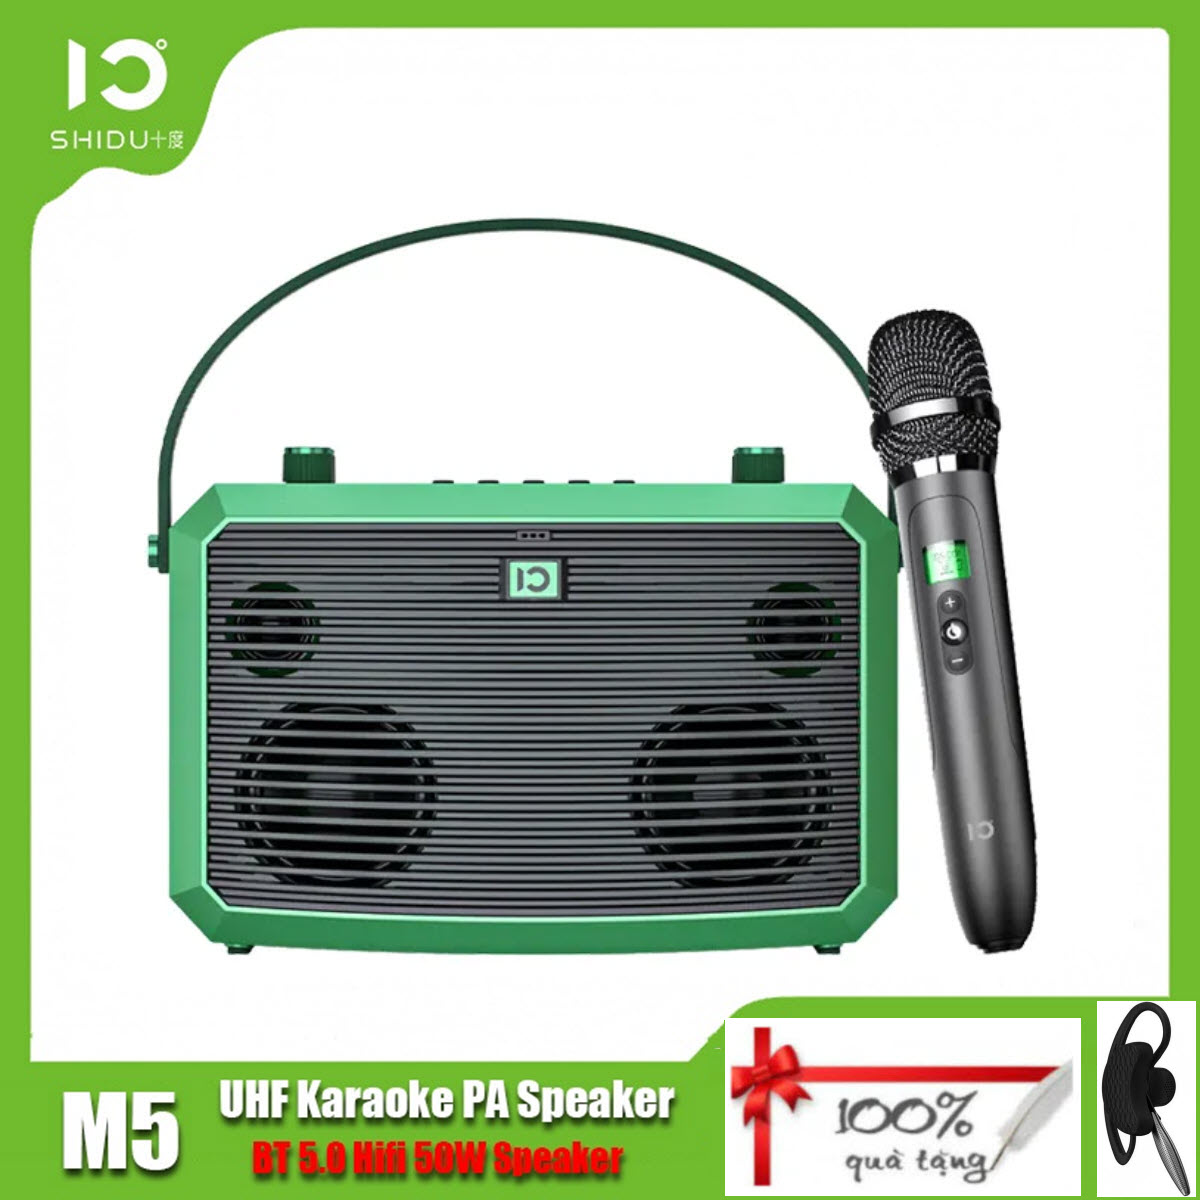 Shidu M5 - Loa Hát Karaoke Xách Tay Bluetooth 5.0 Công Suất 50W Với Microphone UHF U30 Chuyên Dùng Cho Gia Đình - Hàng Chính Hãng.  SHIDU M5 50W Output Power Portable Karaoke Speaker Outdoor Activ Hifi Aux USB Wireless PA Bluetooth Speakers